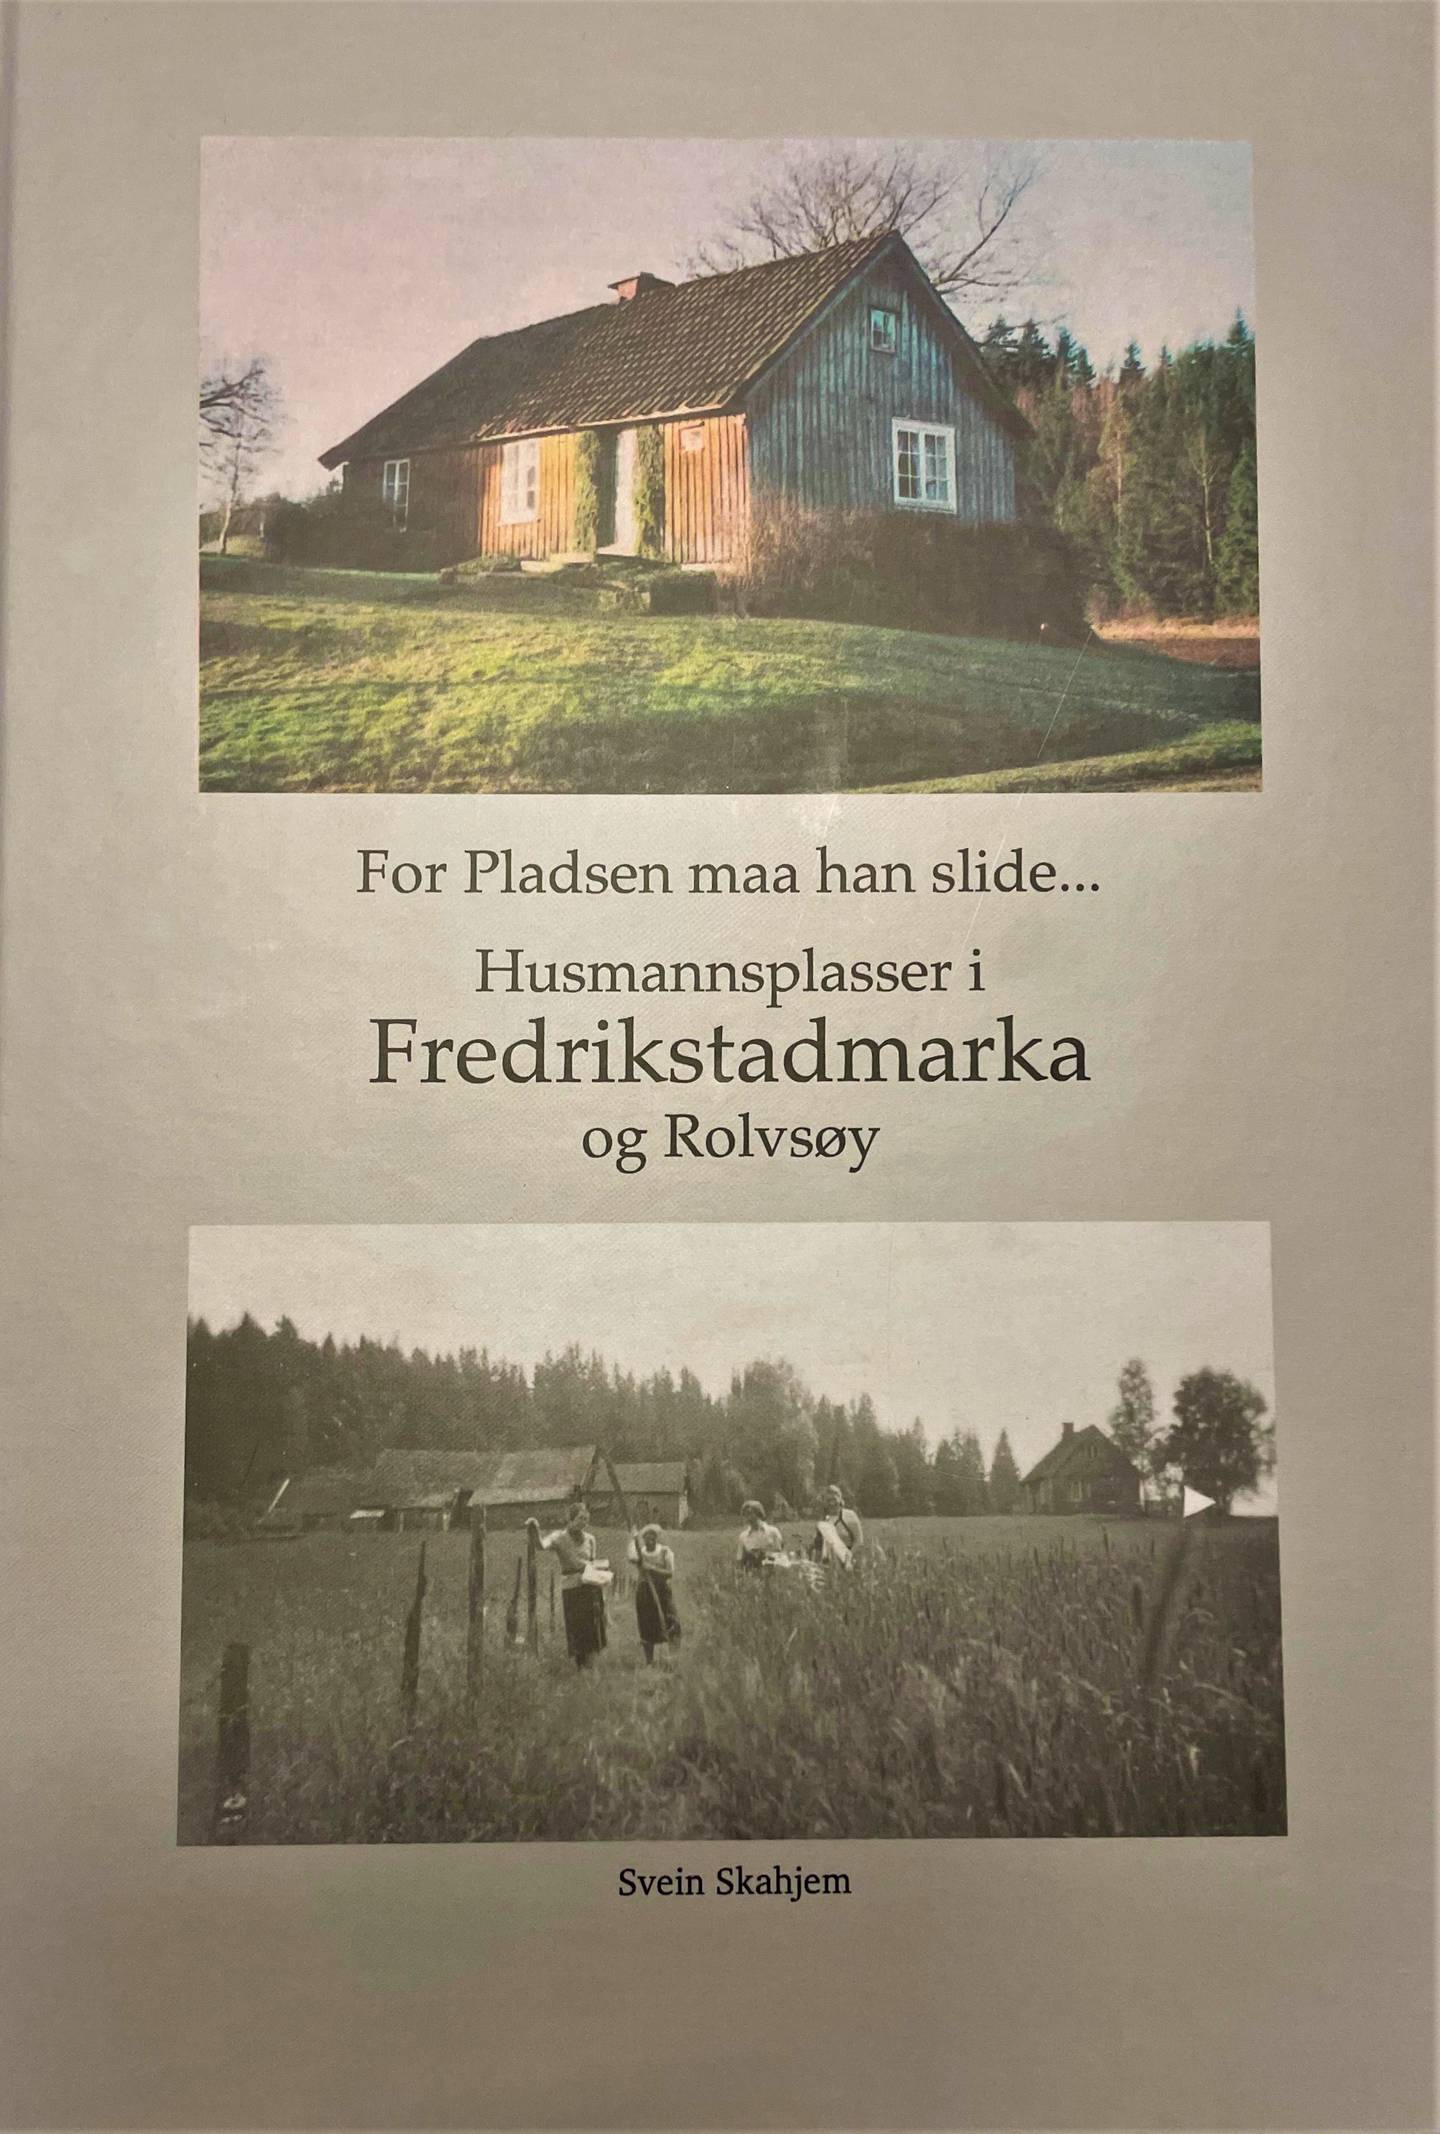 Husmannsplasser i Fredrikstadmarka og Rolvsøy.